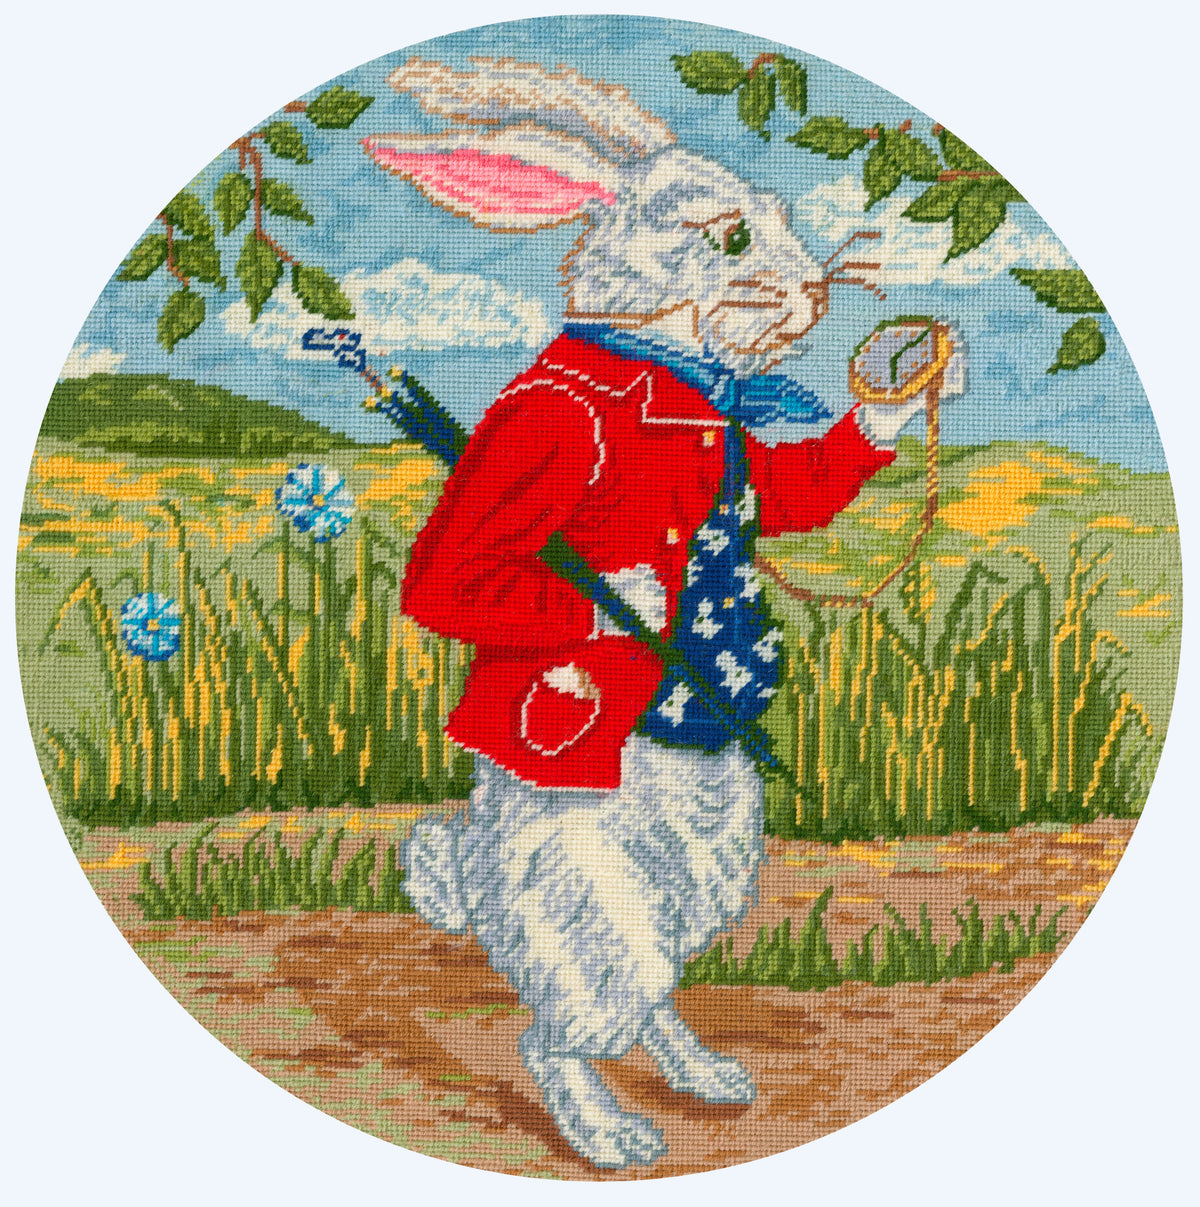 The White Rabbit - Tapestry Kit